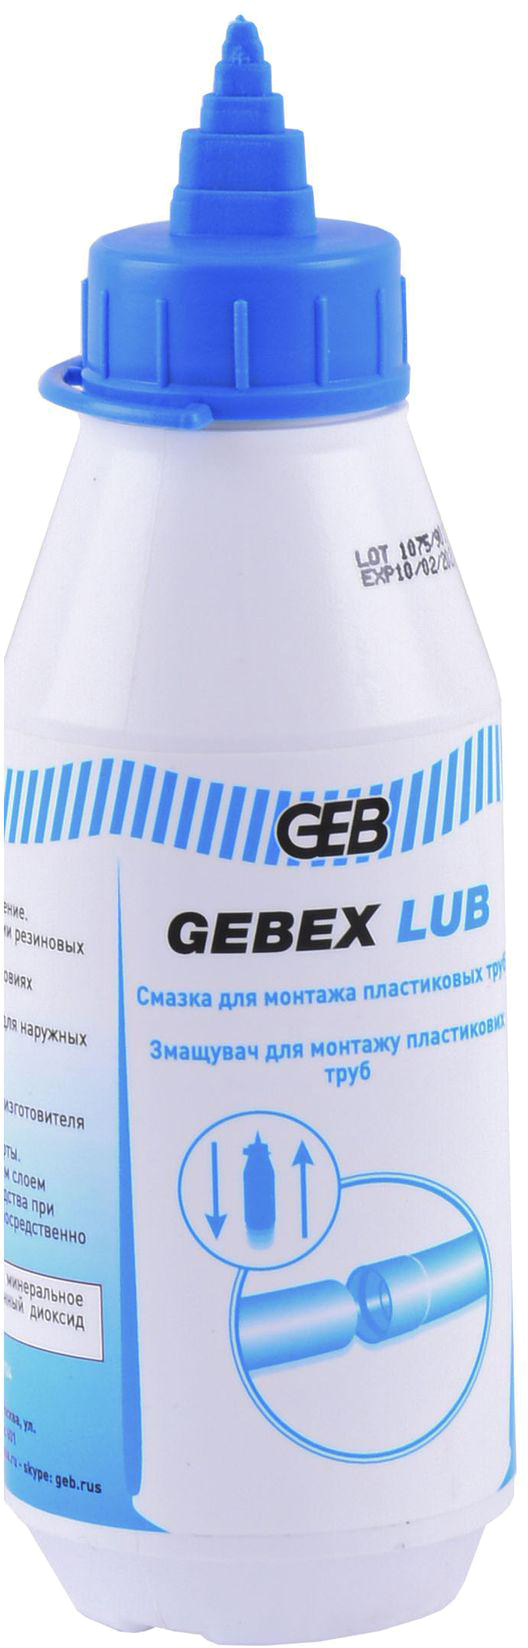 Смазка для труб GEB Gebex Lub 250 мл (504606)